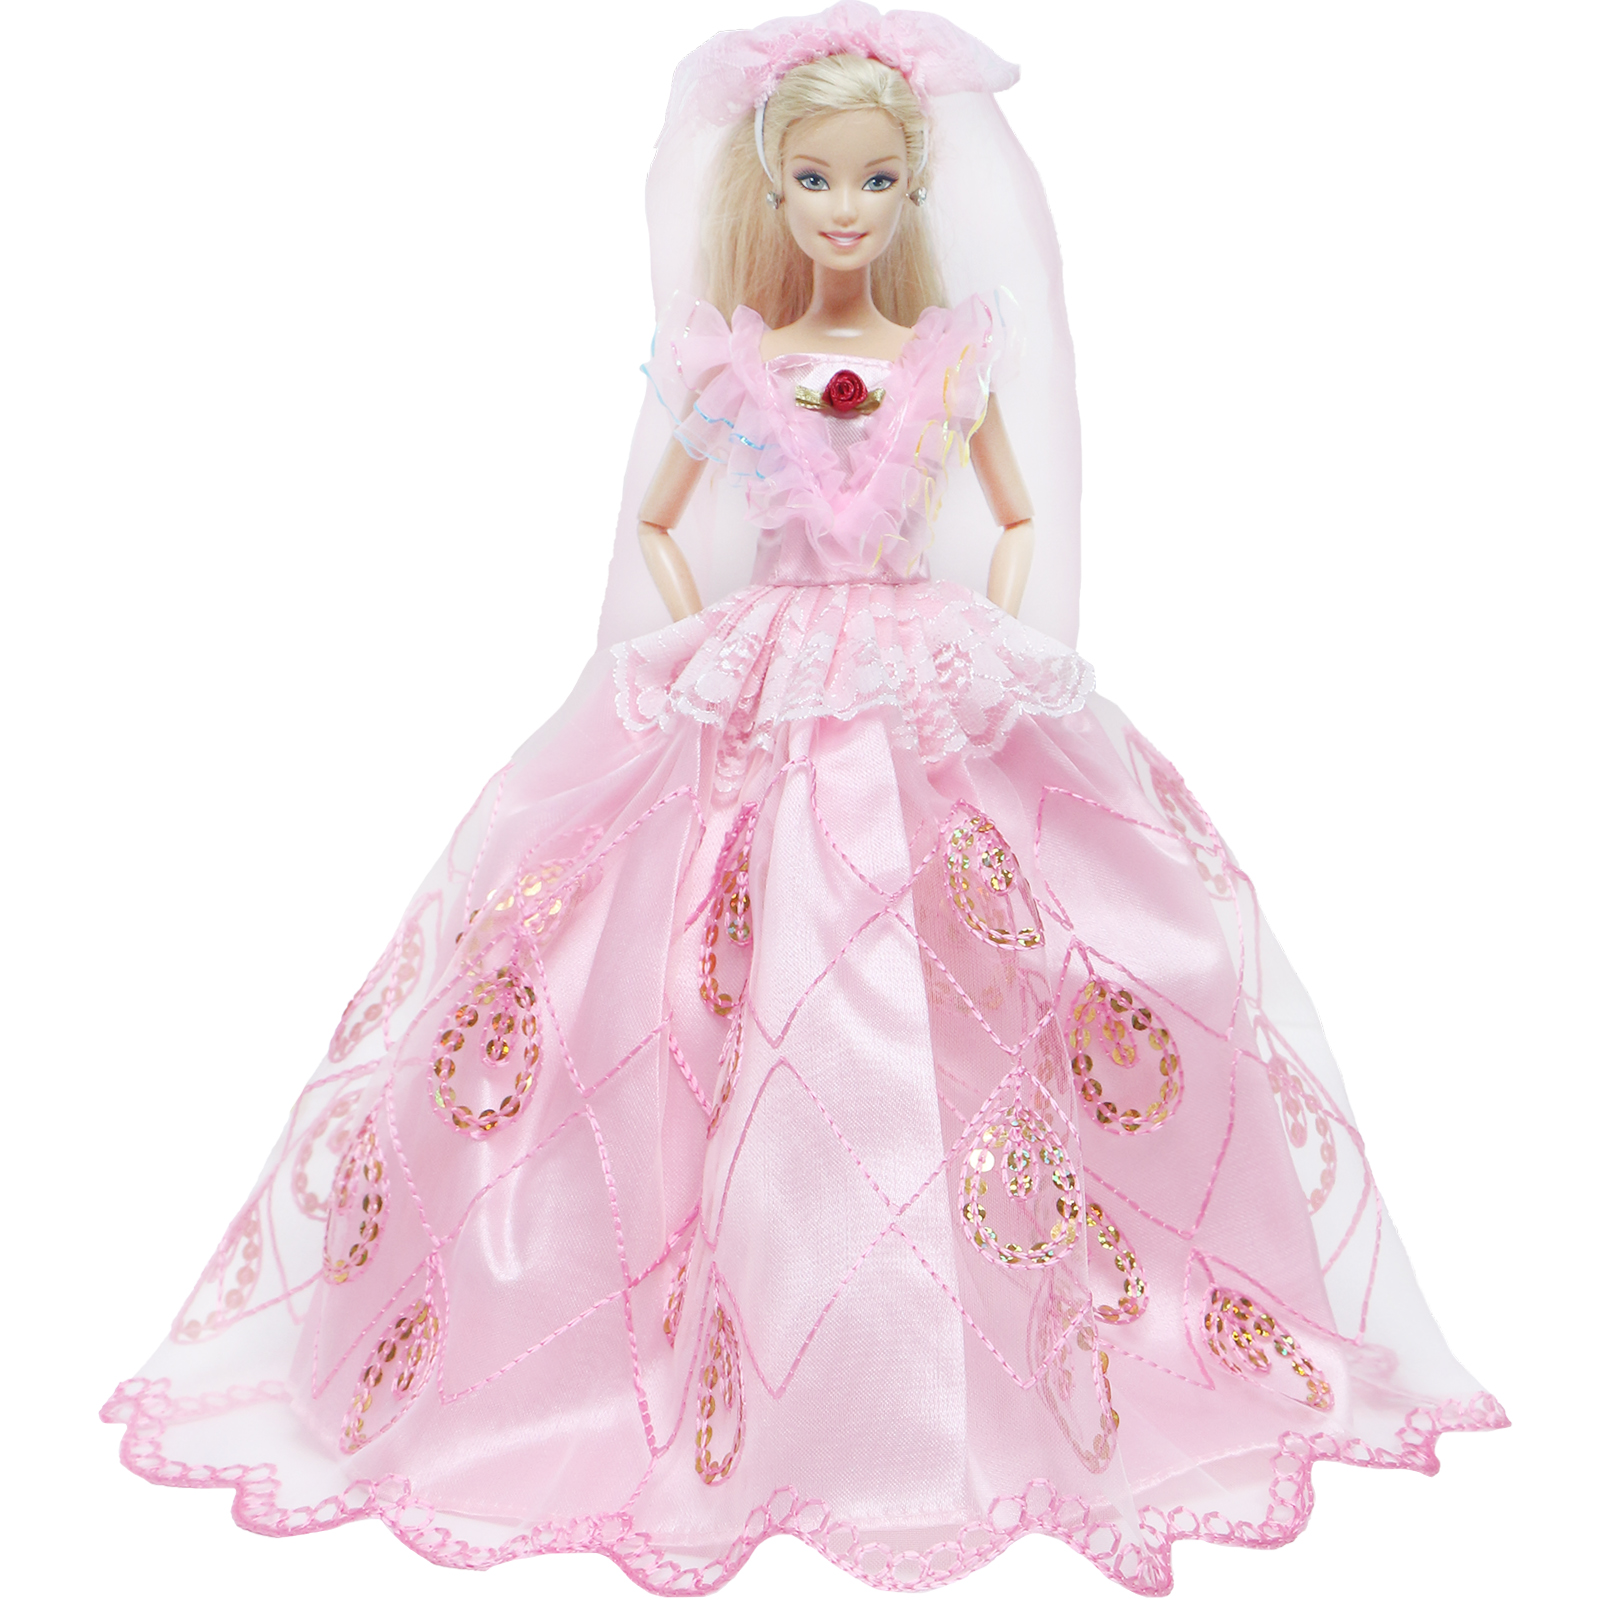 Princesa vestido para boneca barbie, vestido elegante com rendas, saia,  véu, chapéu, acessórios, festa de casamento